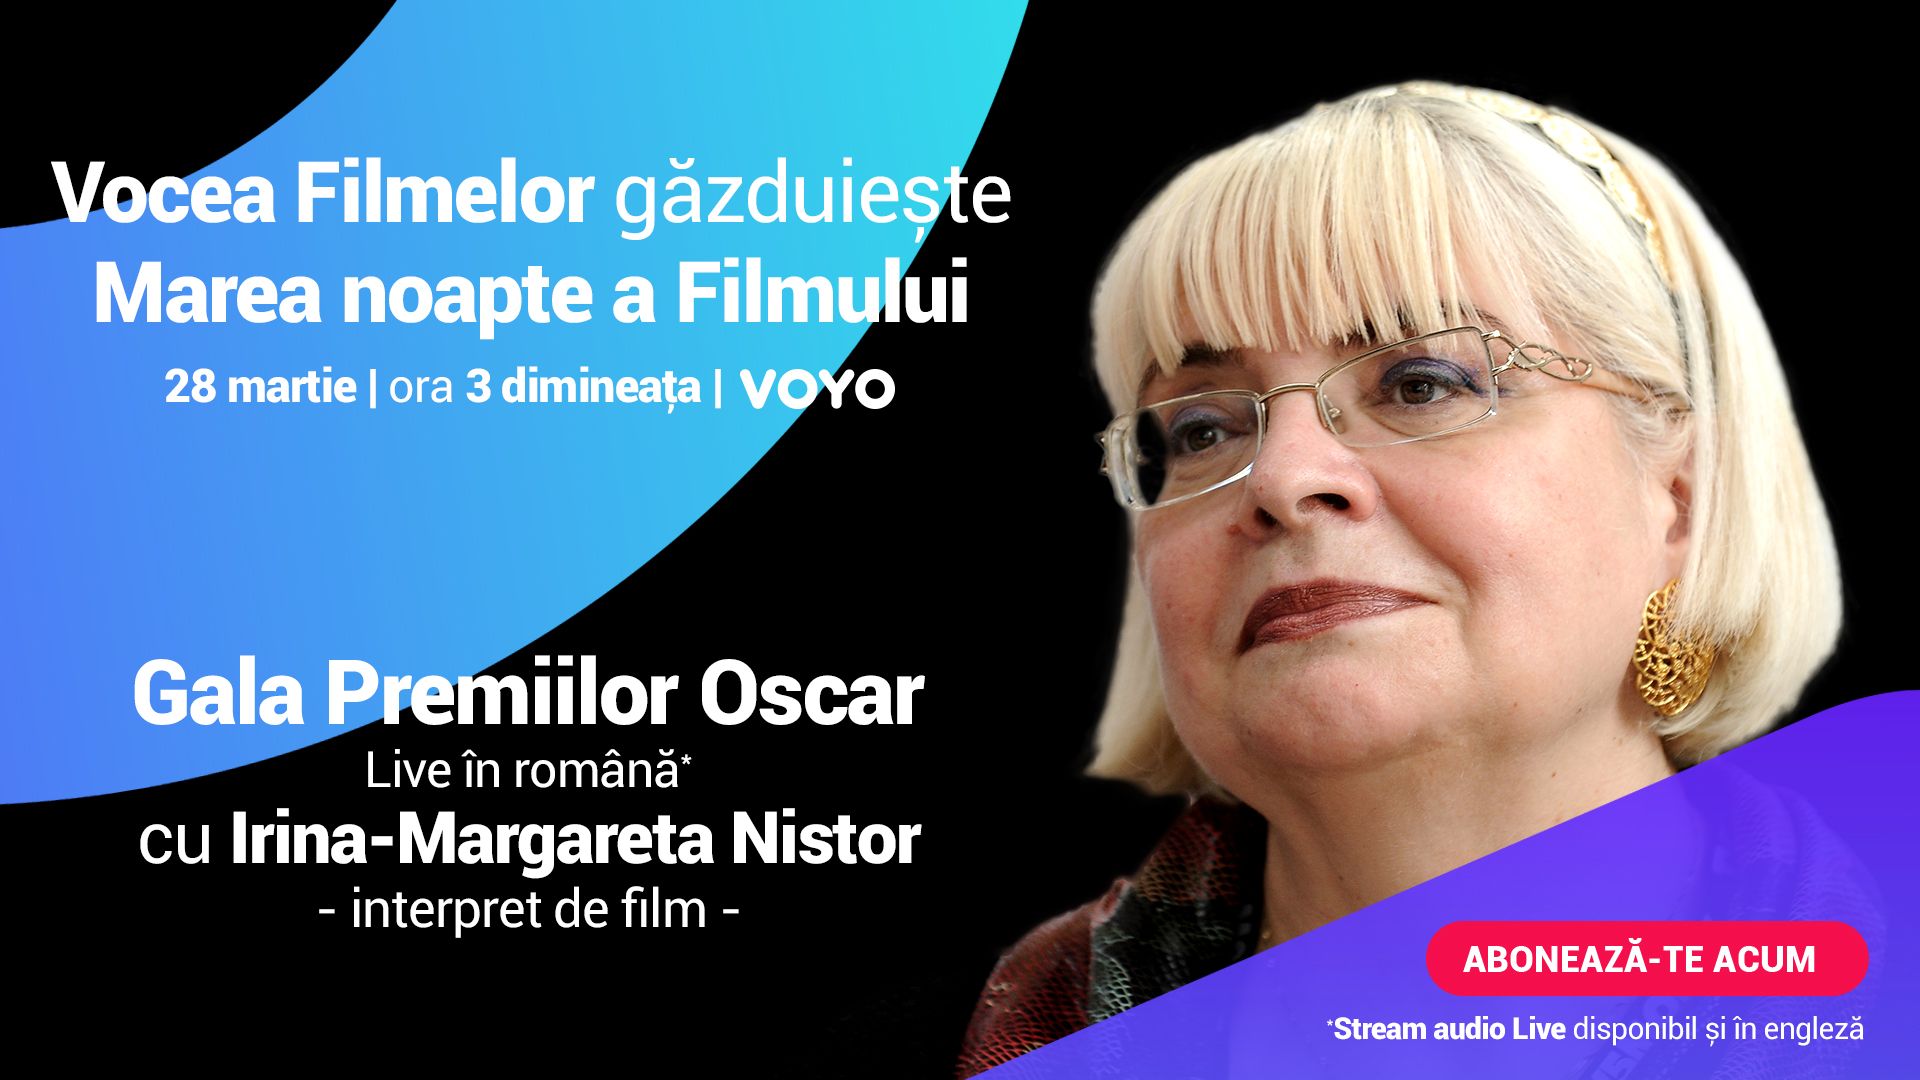 Irina-Margareta Nistor va comenta Premiile Oscar, în direct, pe o platformă online